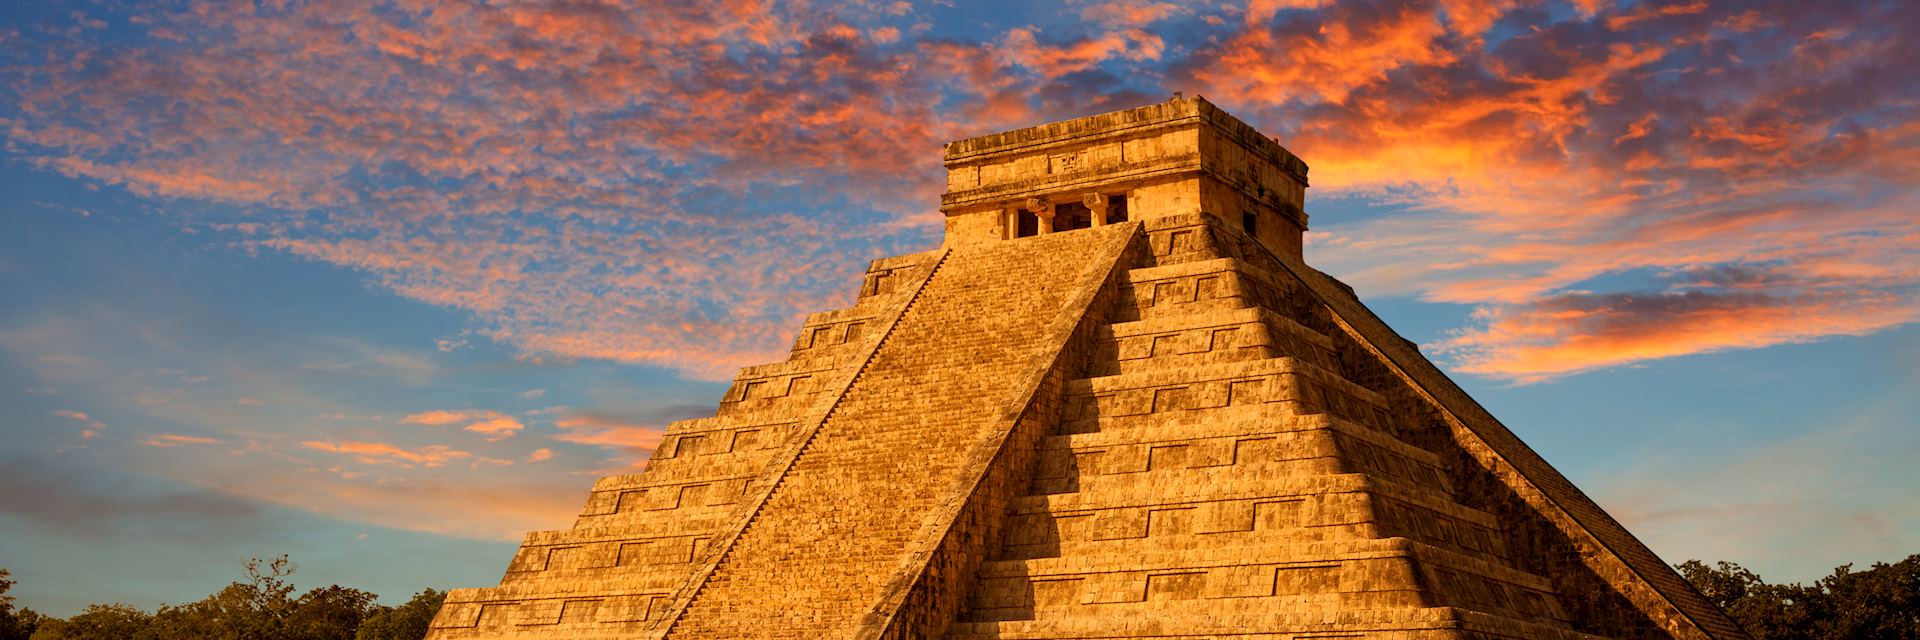 The Maya ruins of Chichén Itzá